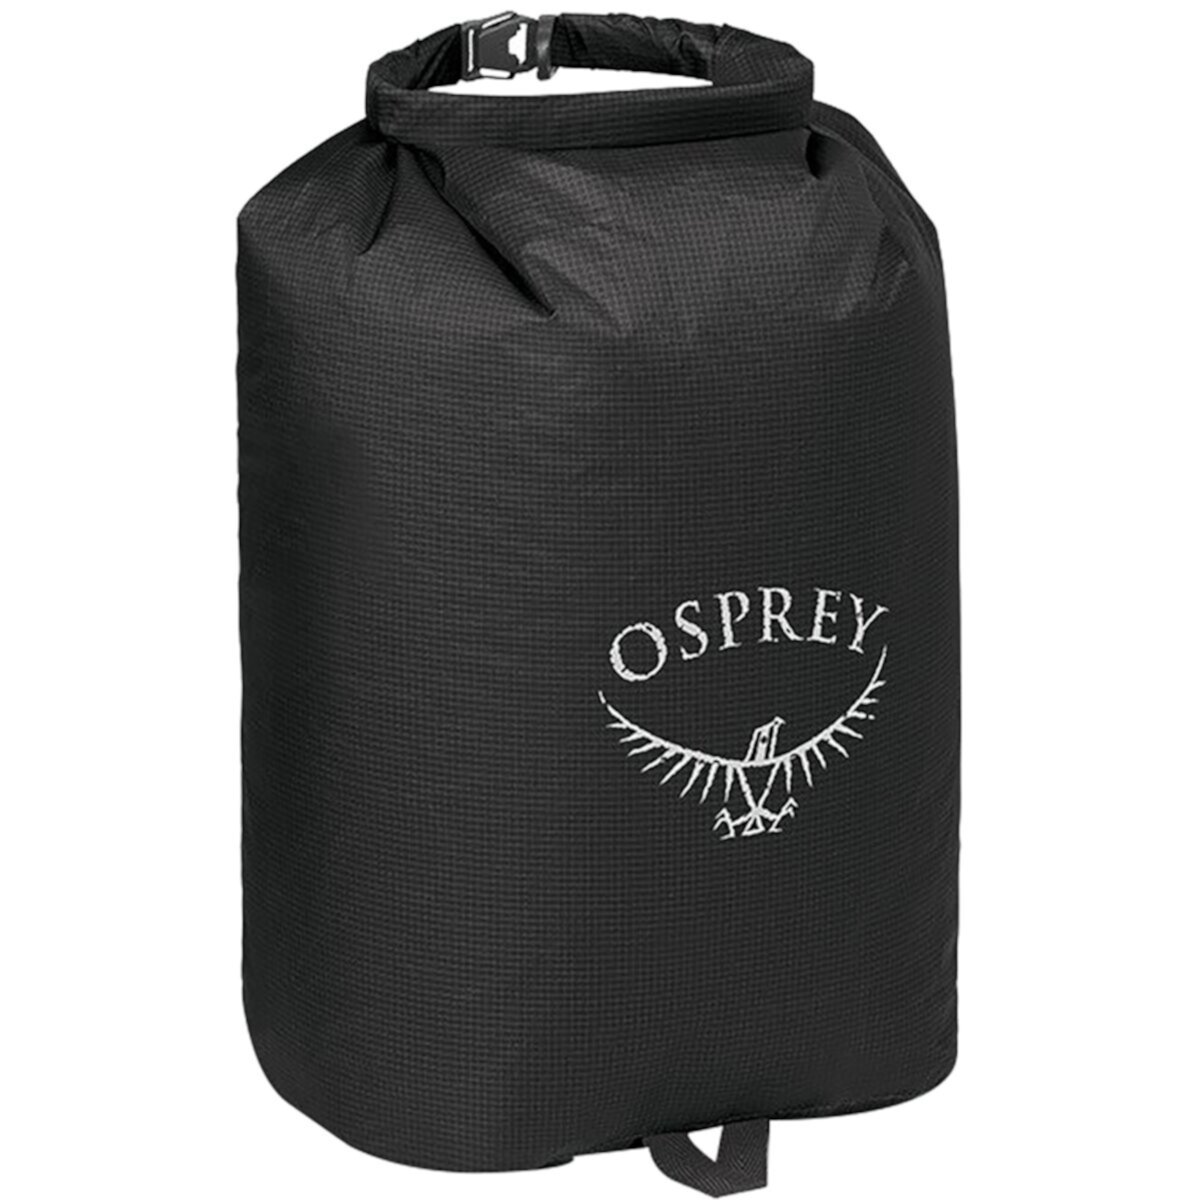 Сверхлегкий сухой мешок Osprey Packs Osprey Packs